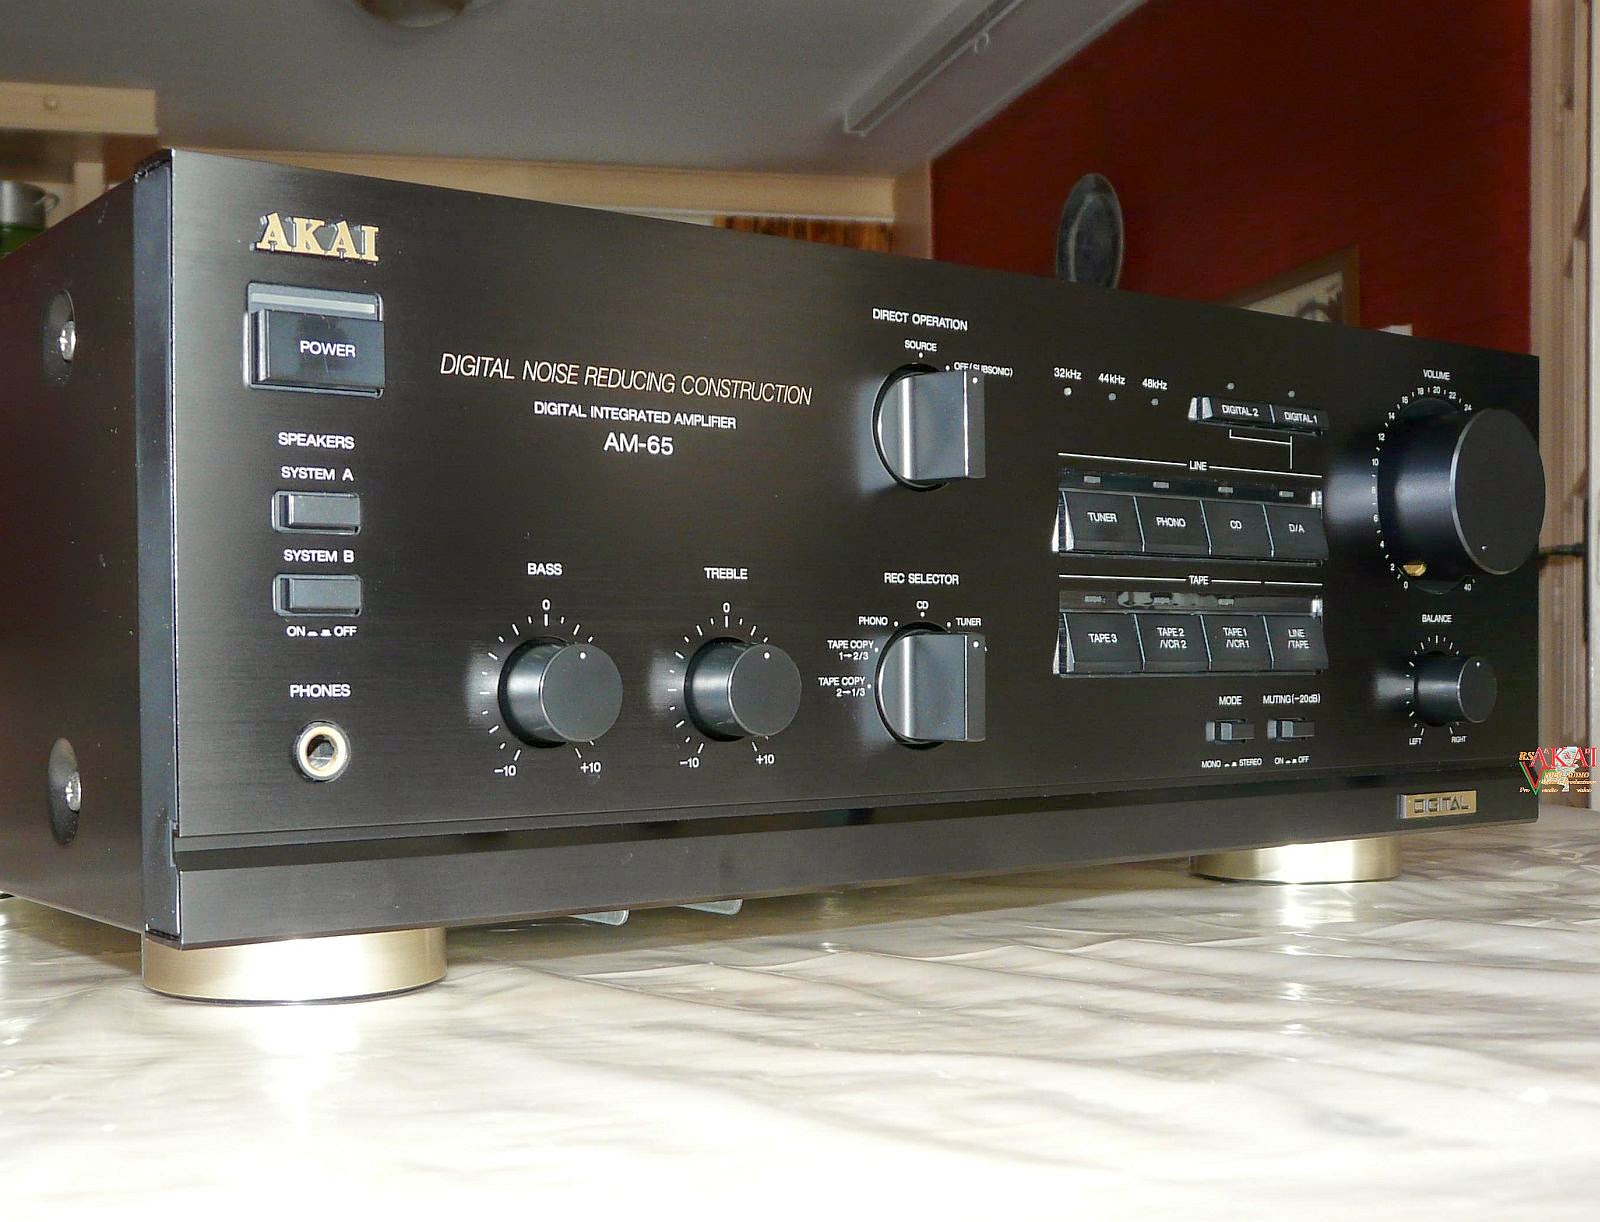 ازدراء مشتبه فيه يتملص  AudioBaza: Akai AM-65 - Integrated Amplifier